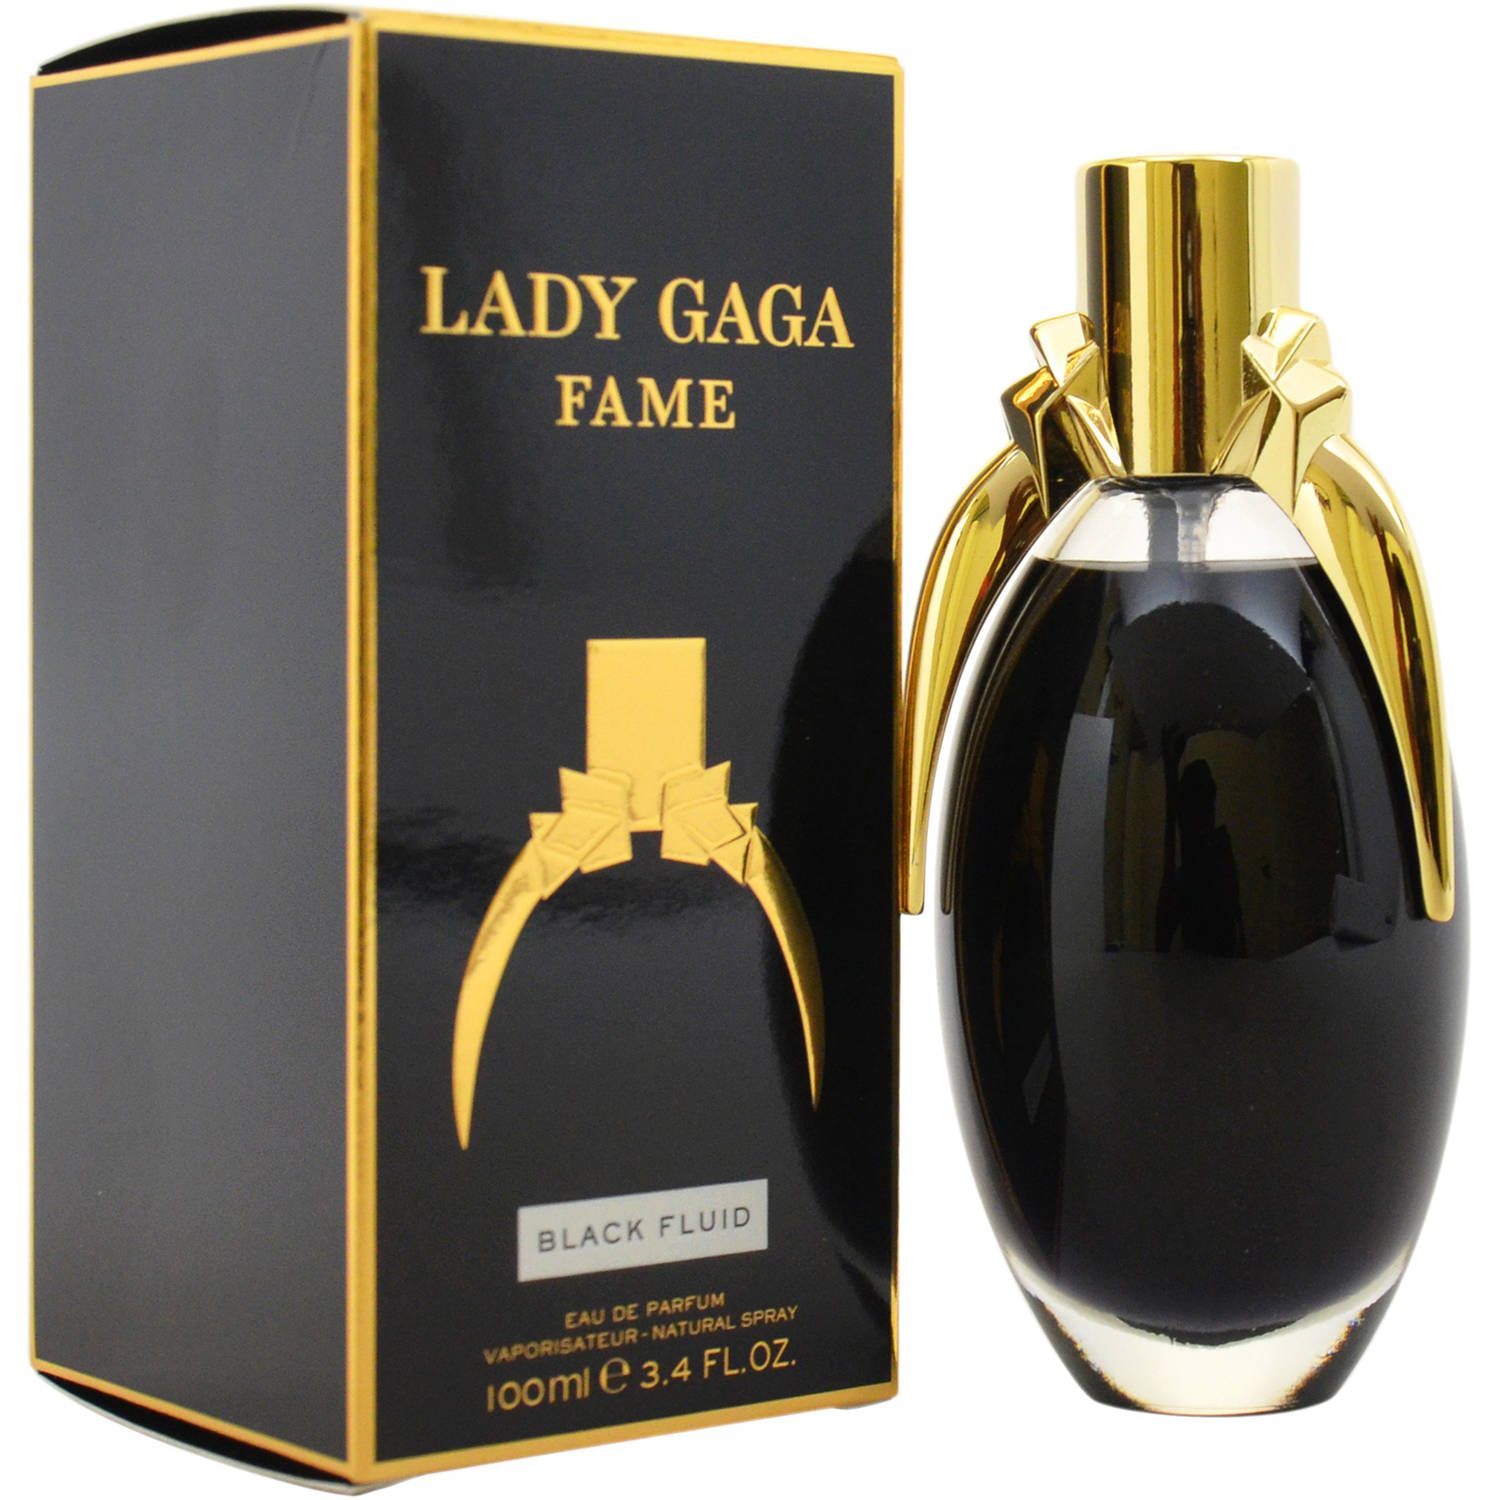 Fame by Lady Gaga, Eau de Parfum for Women, 3.4 oz - image 4 of 6